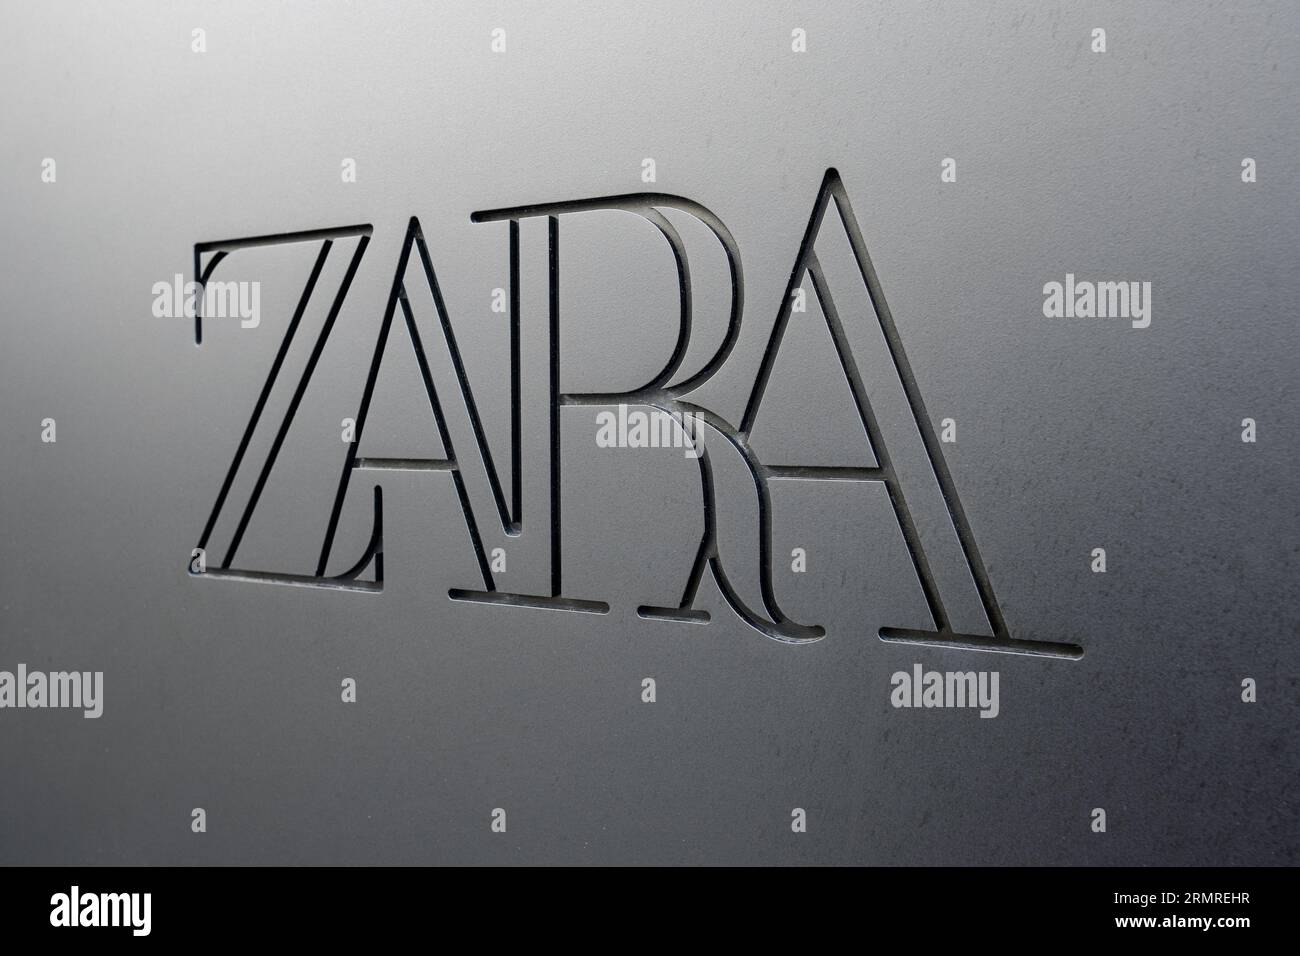 Coruna, Spanien; 29. august 2023: Nahaufnahme eines Zara-Logos auf dem Fassadenladen Stockfoto